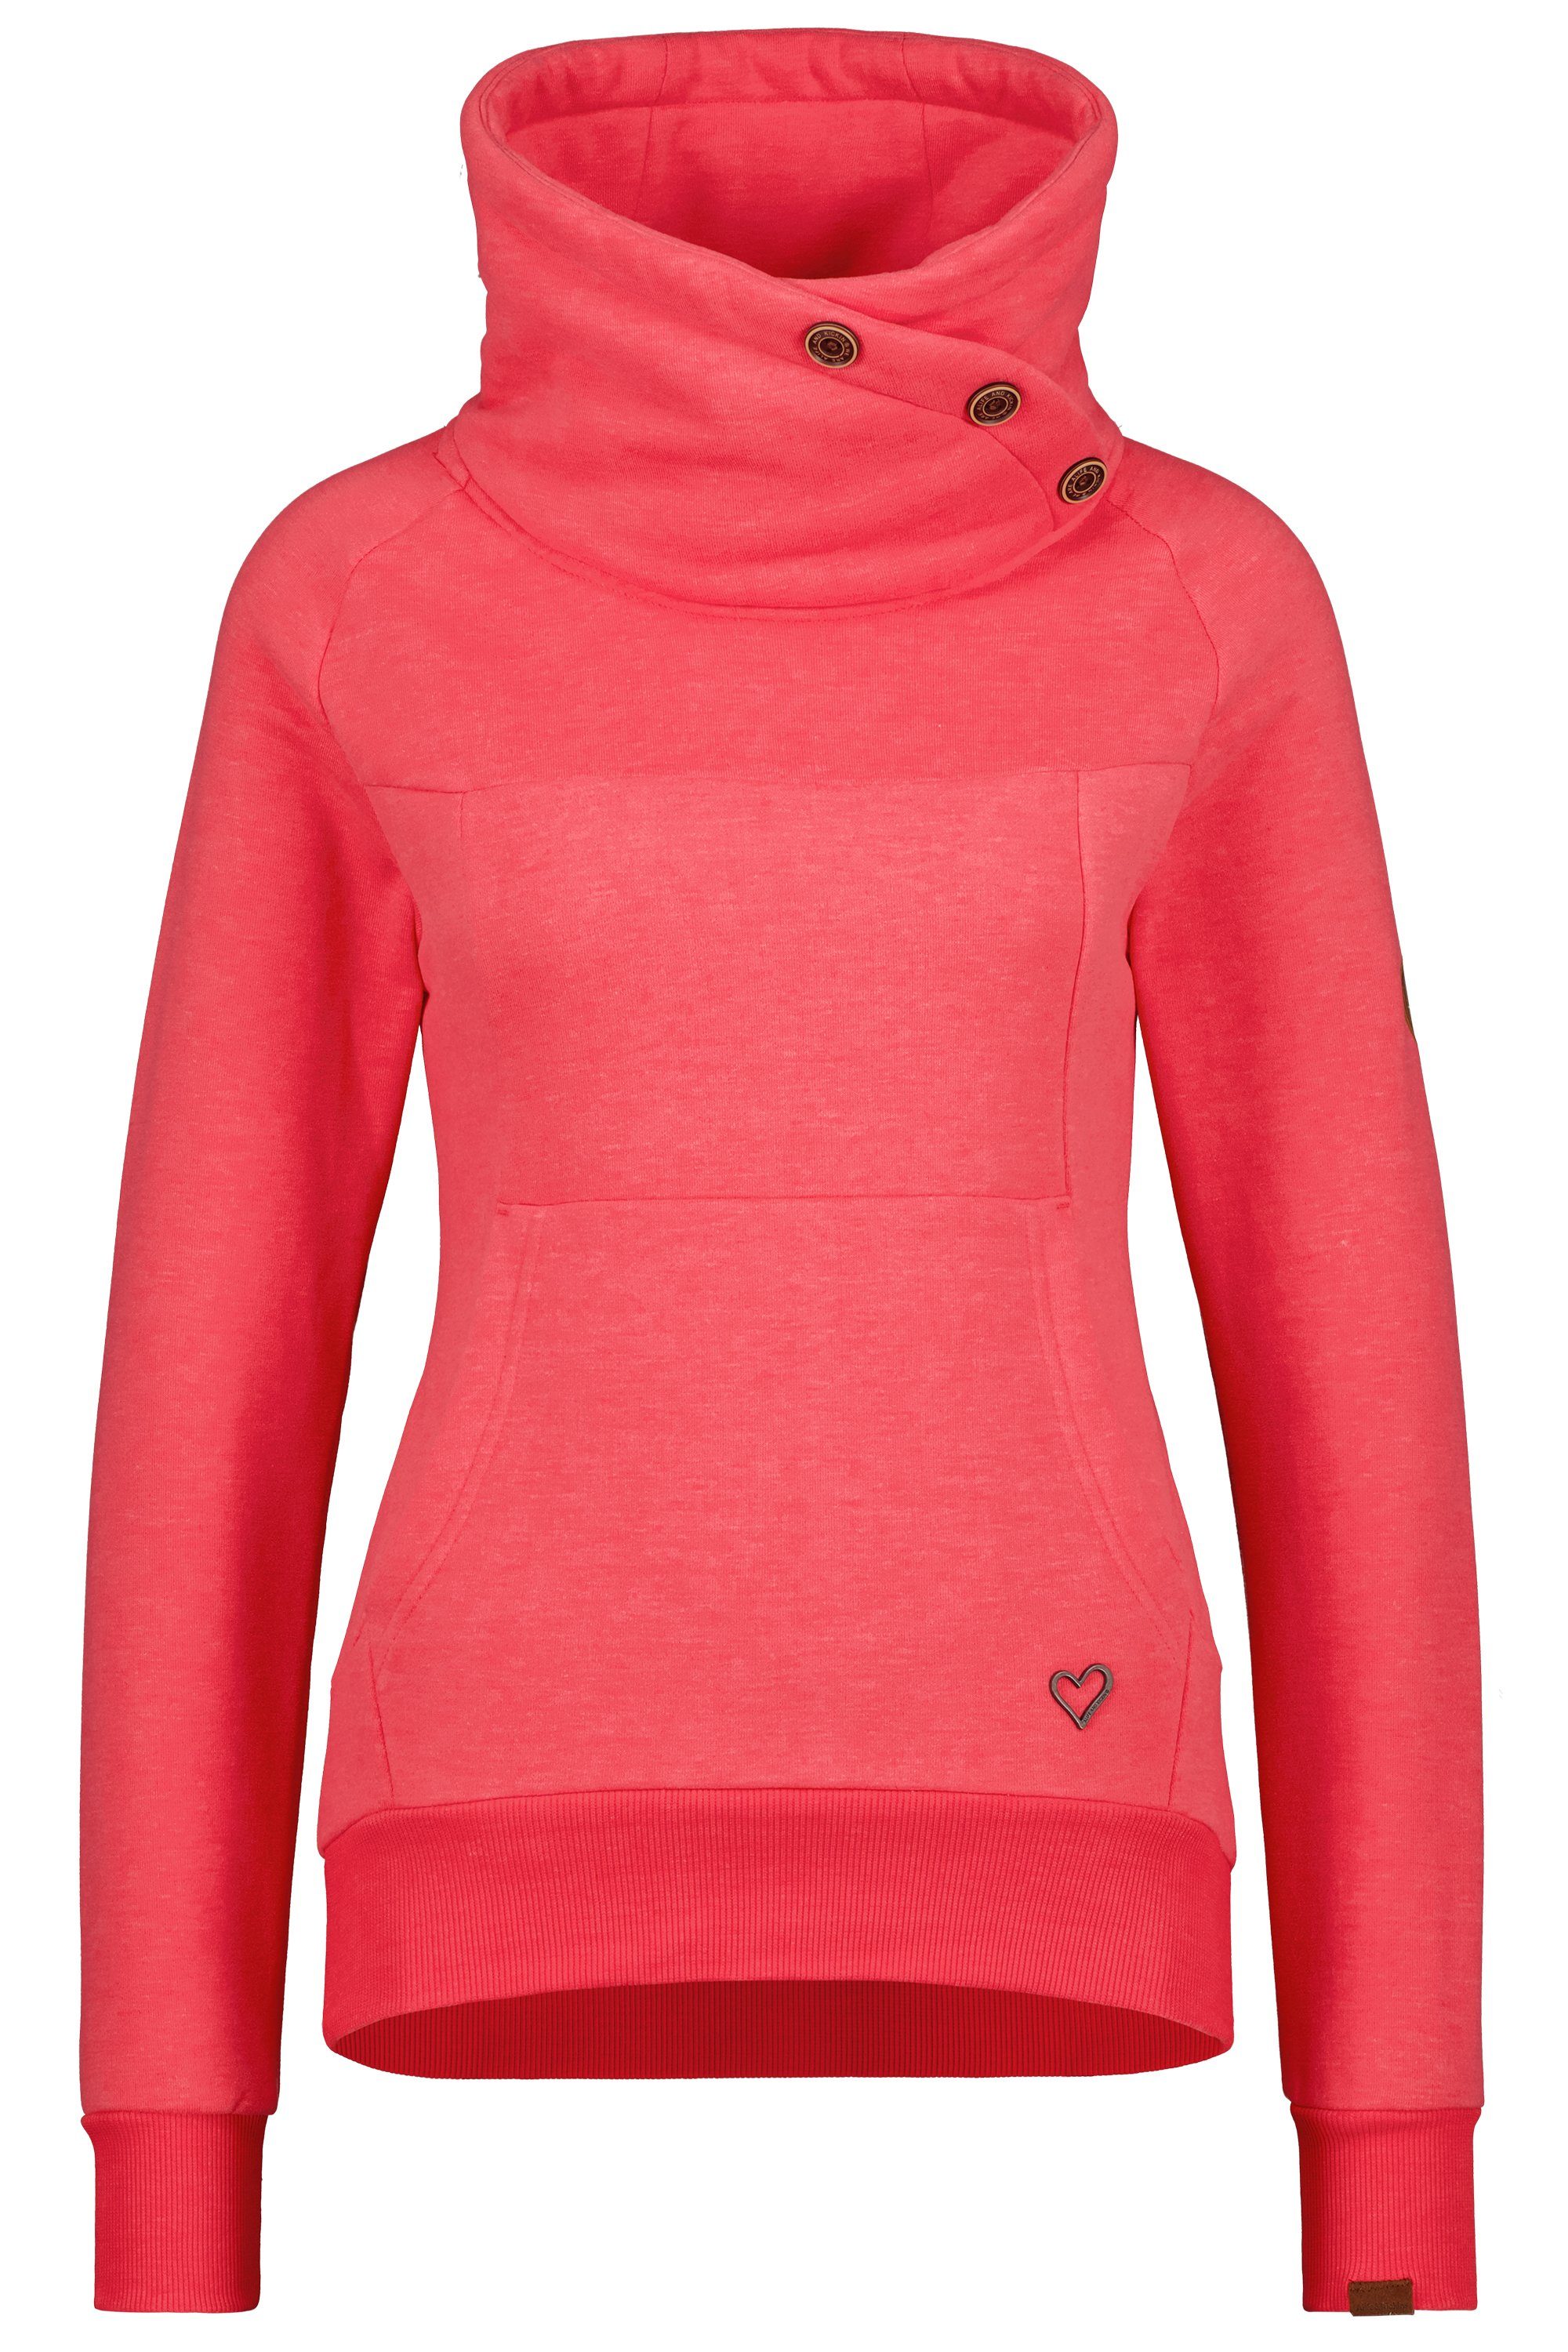 coral Kickin VioletAK Damen Sweatshirt Pullover Alife & Rundhalspullover, Sweatshirt melange A